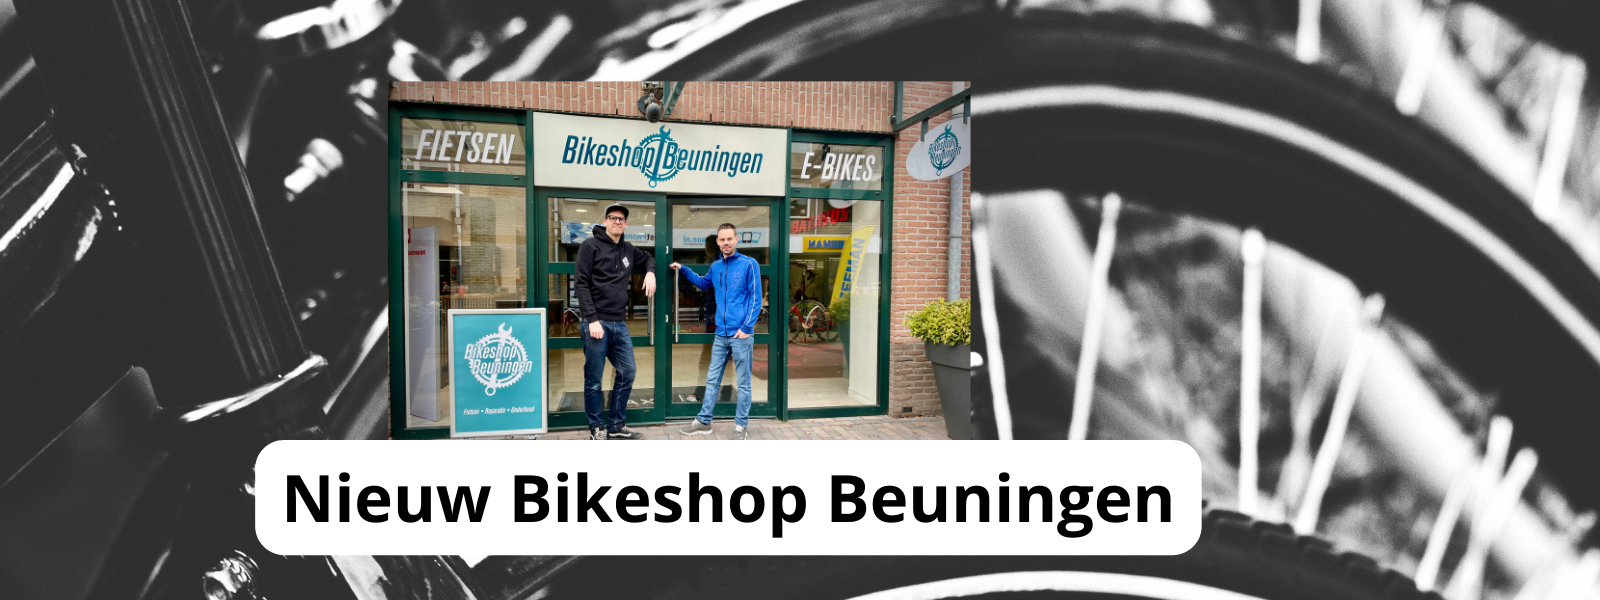 Bikeshop Beuningen opent op 2 april